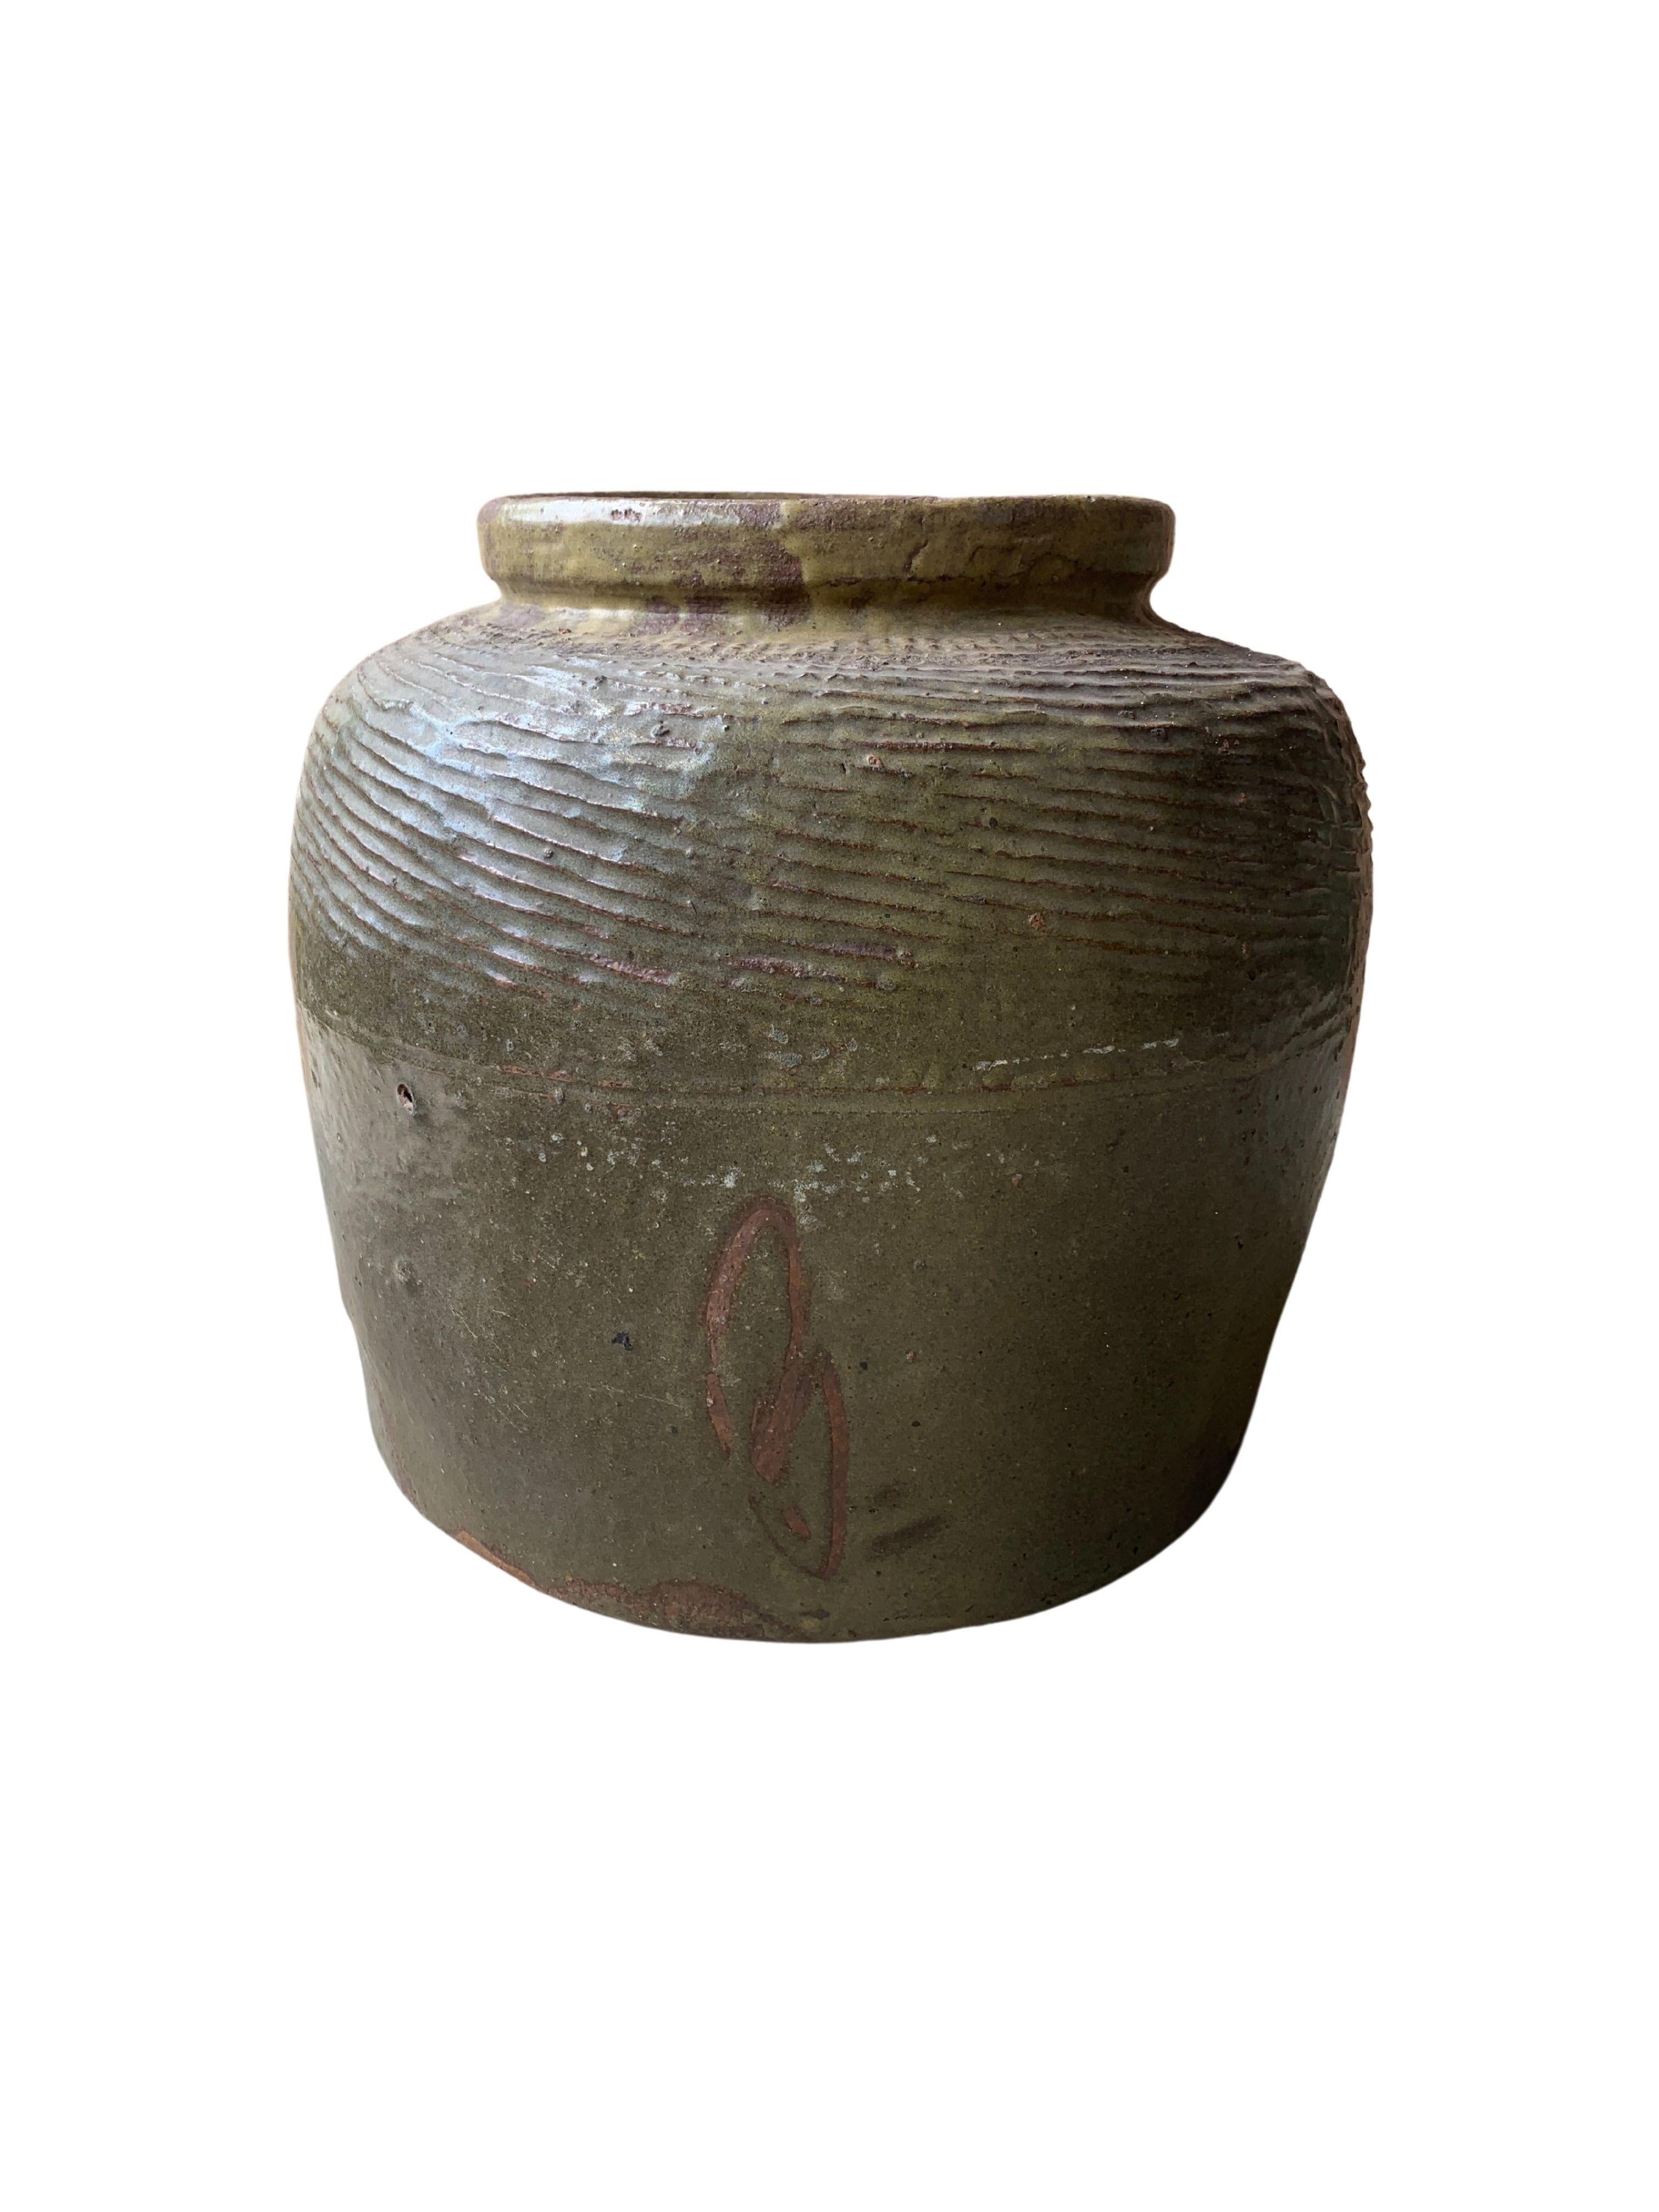 Dieses glasierte chinesische Keramikgefäß wurde früher zum Einlegen von Lebensmitteln verwendet. Es hat eine jadegrüne Oberfläche und eine gerippte Außenseite. Ein großartiges Beispiel für chinesische Keramik, dessen Unvollkommenheit und Alterung im